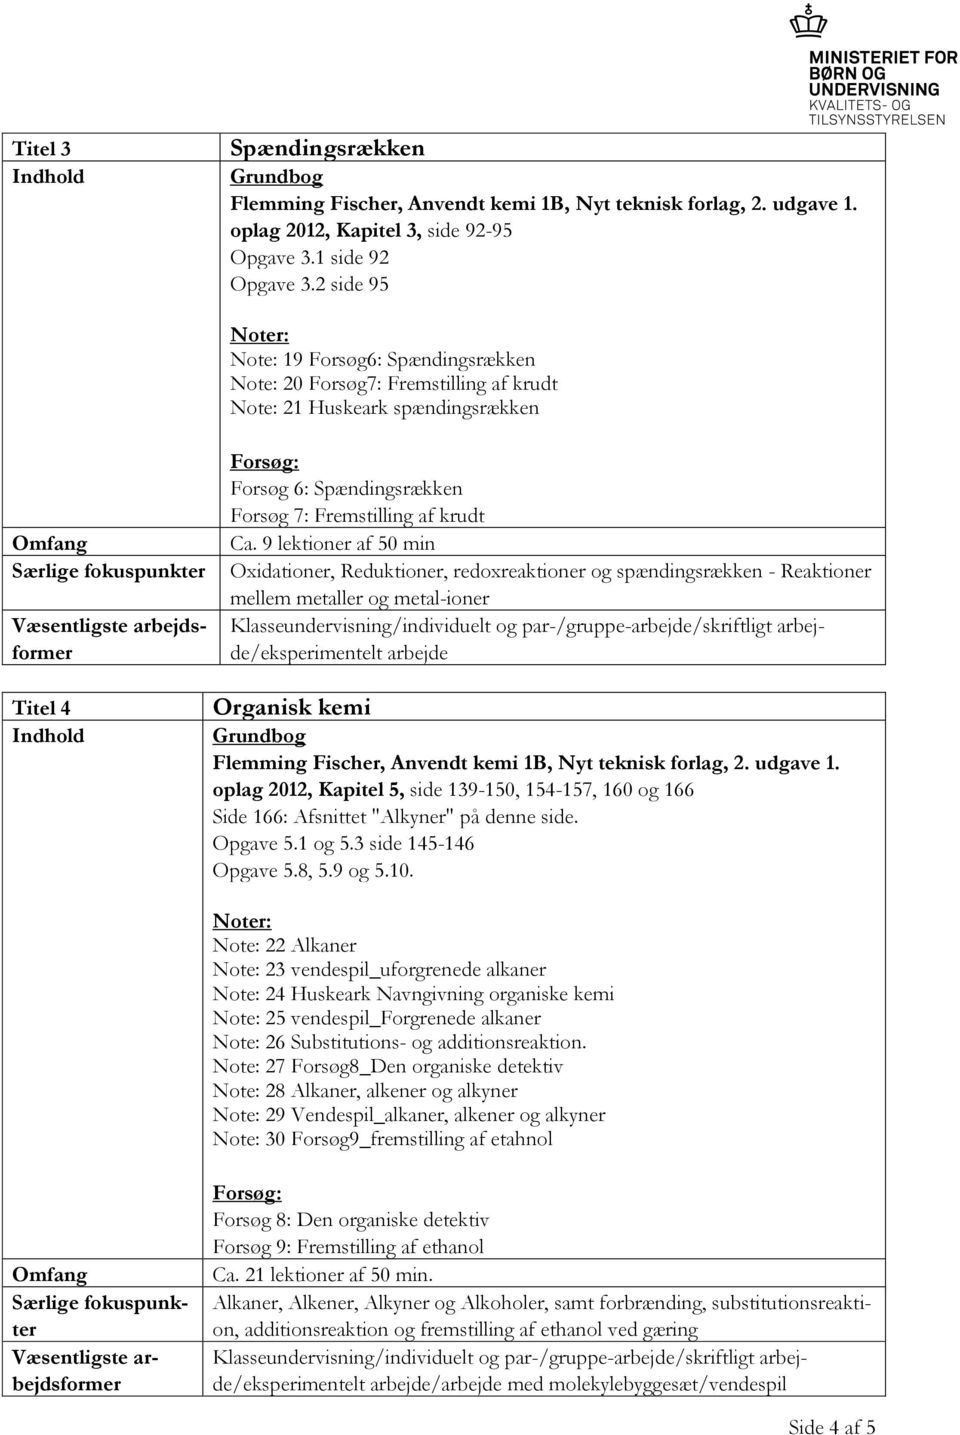 9 lektioner af 50 min Oxidationer, Reduktioner, redoxreaktioner og spændingsrækken - Reaktioner mellem metaller og metal-ioner arbejde Organisk kemi oplag 2012, Kapitel 5, side 139-150, 154-157, 160